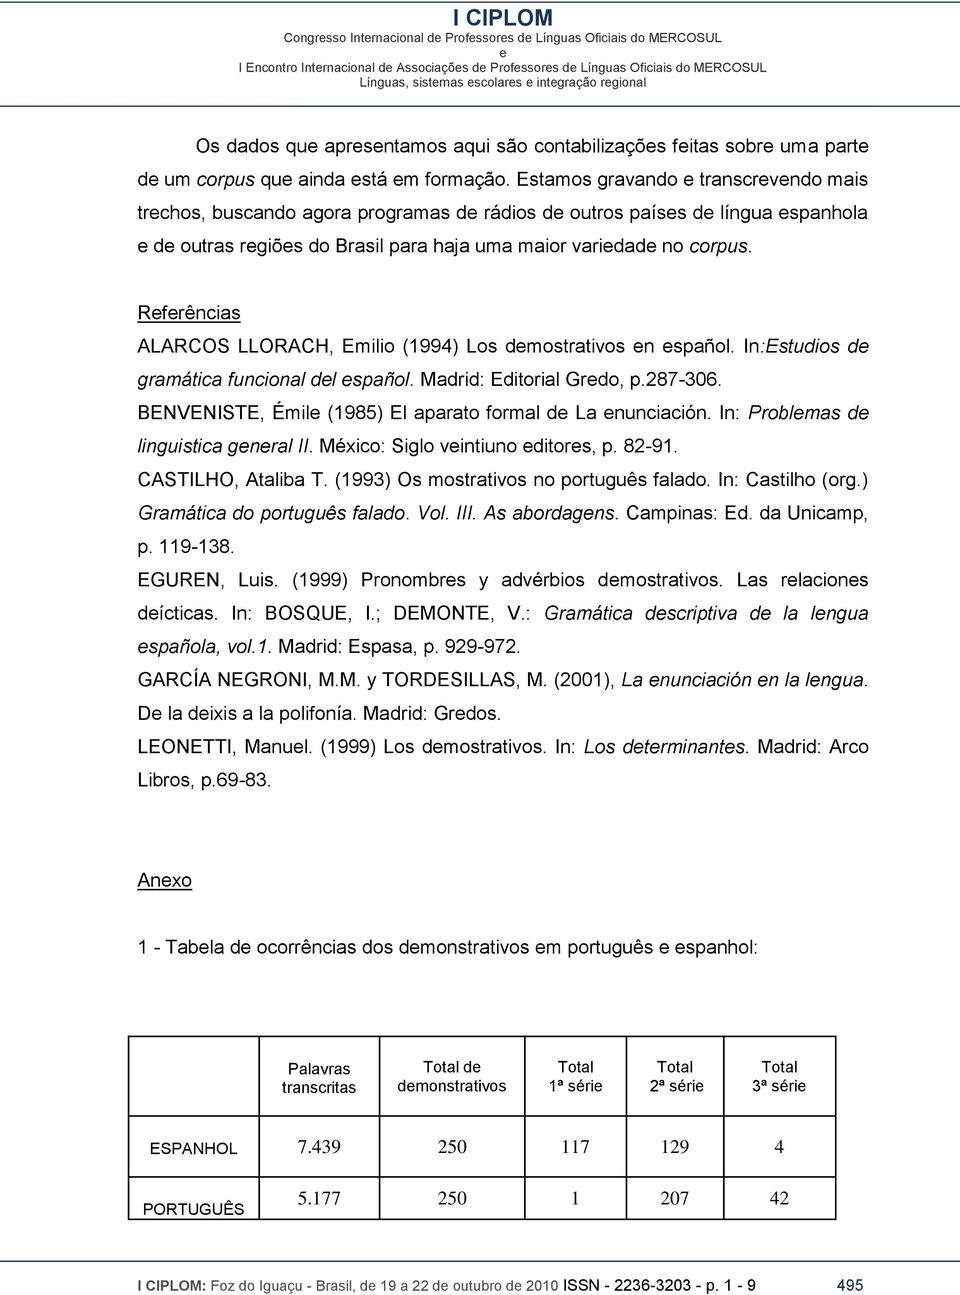 Rfrências ALARCOS LLORACH, Emilio (1994) Los dmostrativos n spañol. In:Estudios d gramática funcional dl spañol. Madrid: Editorial Grdo, p.287-306.